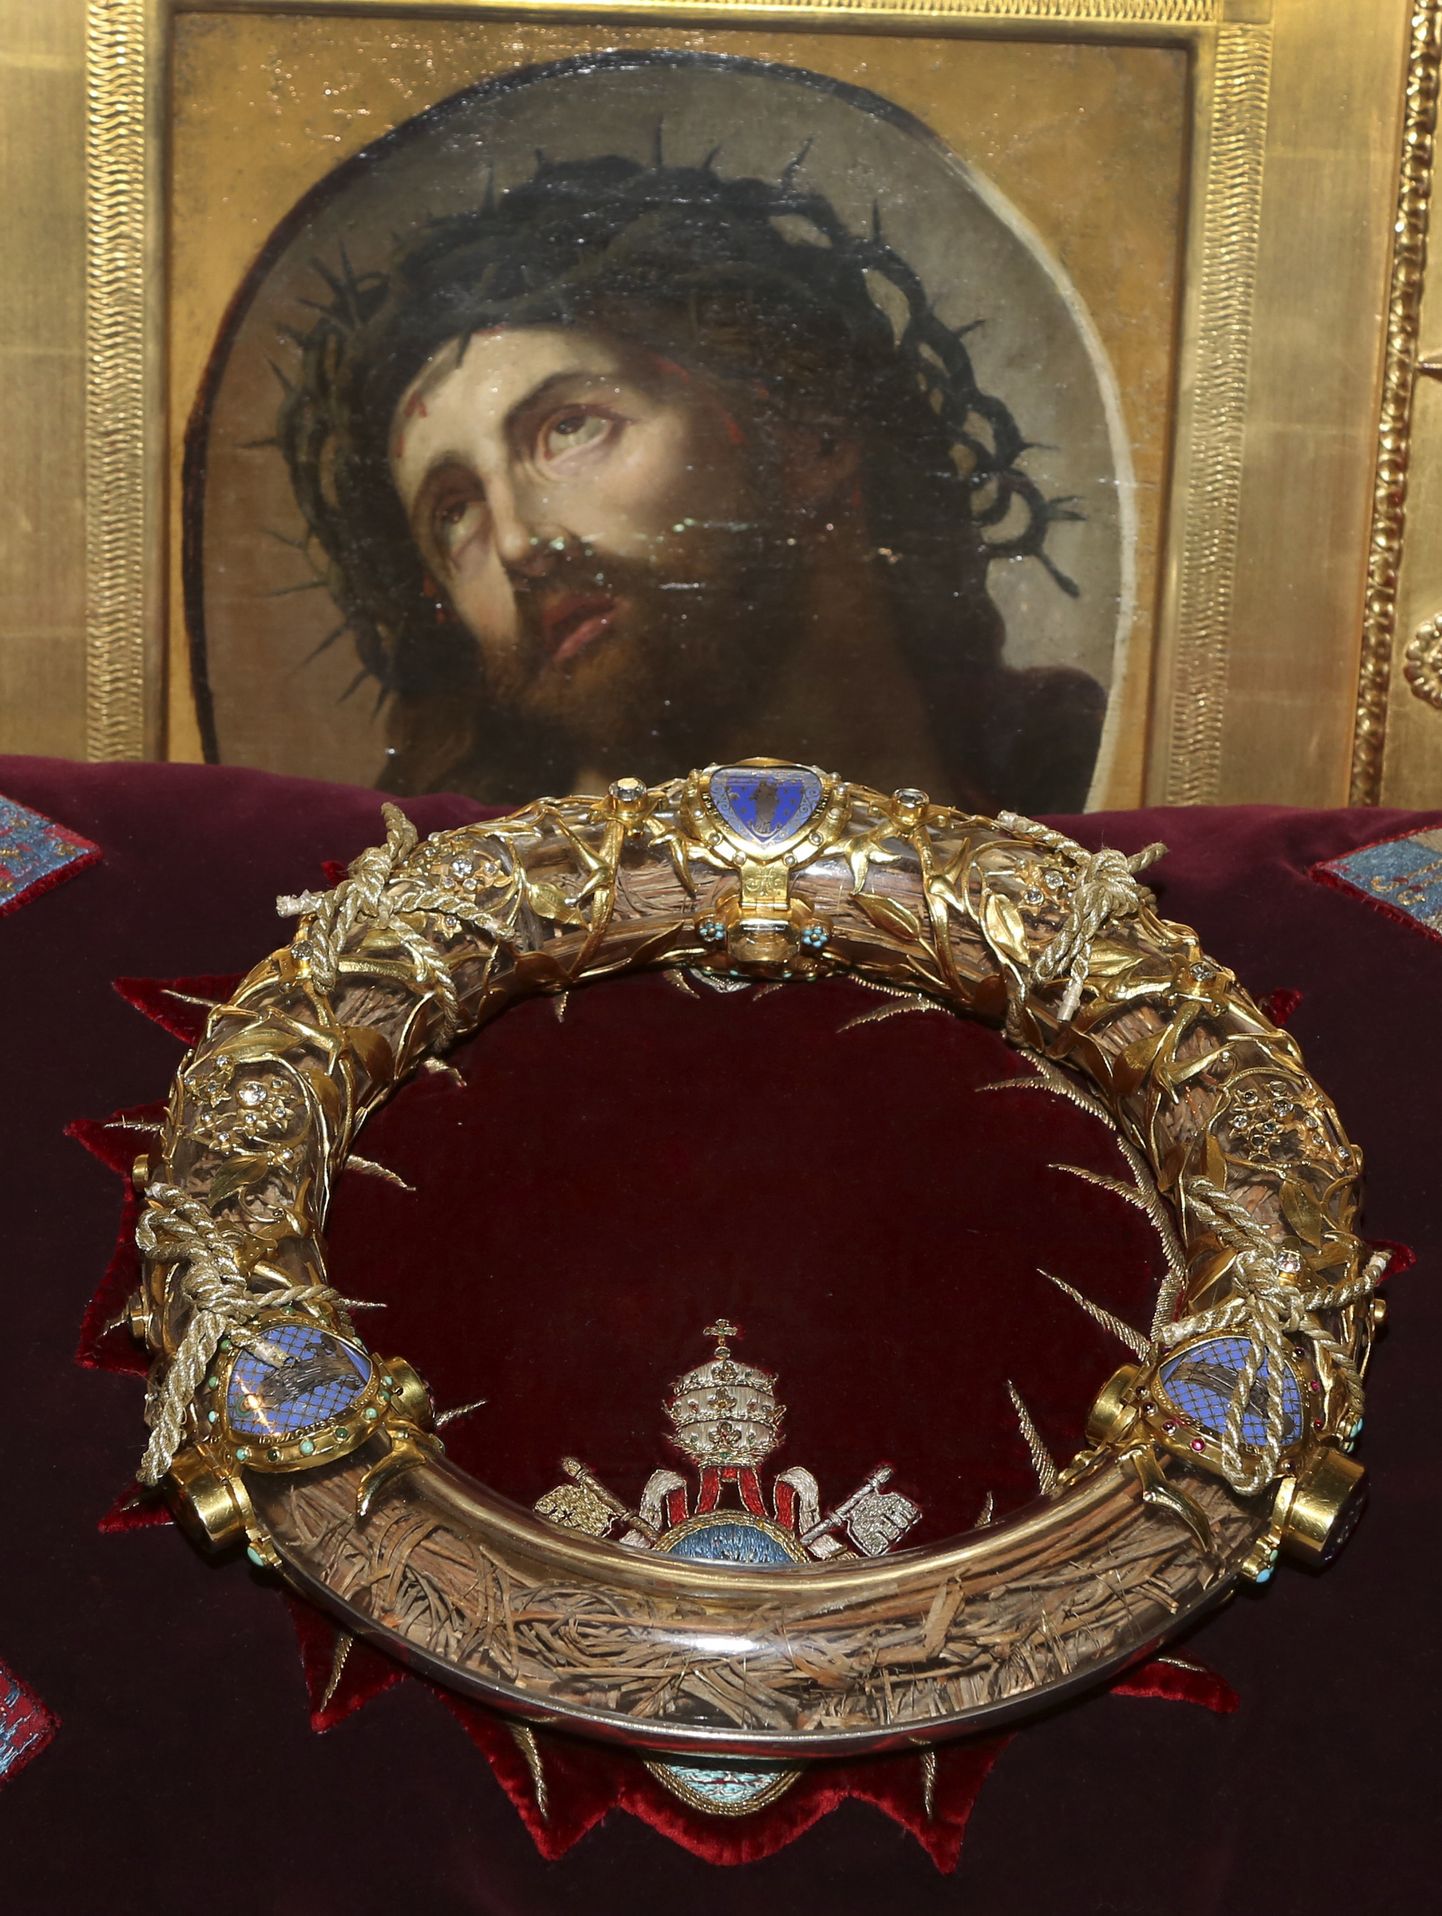 Notre-Dame'i üks kuulsamaid aardeid on Jeesuse okaskroon